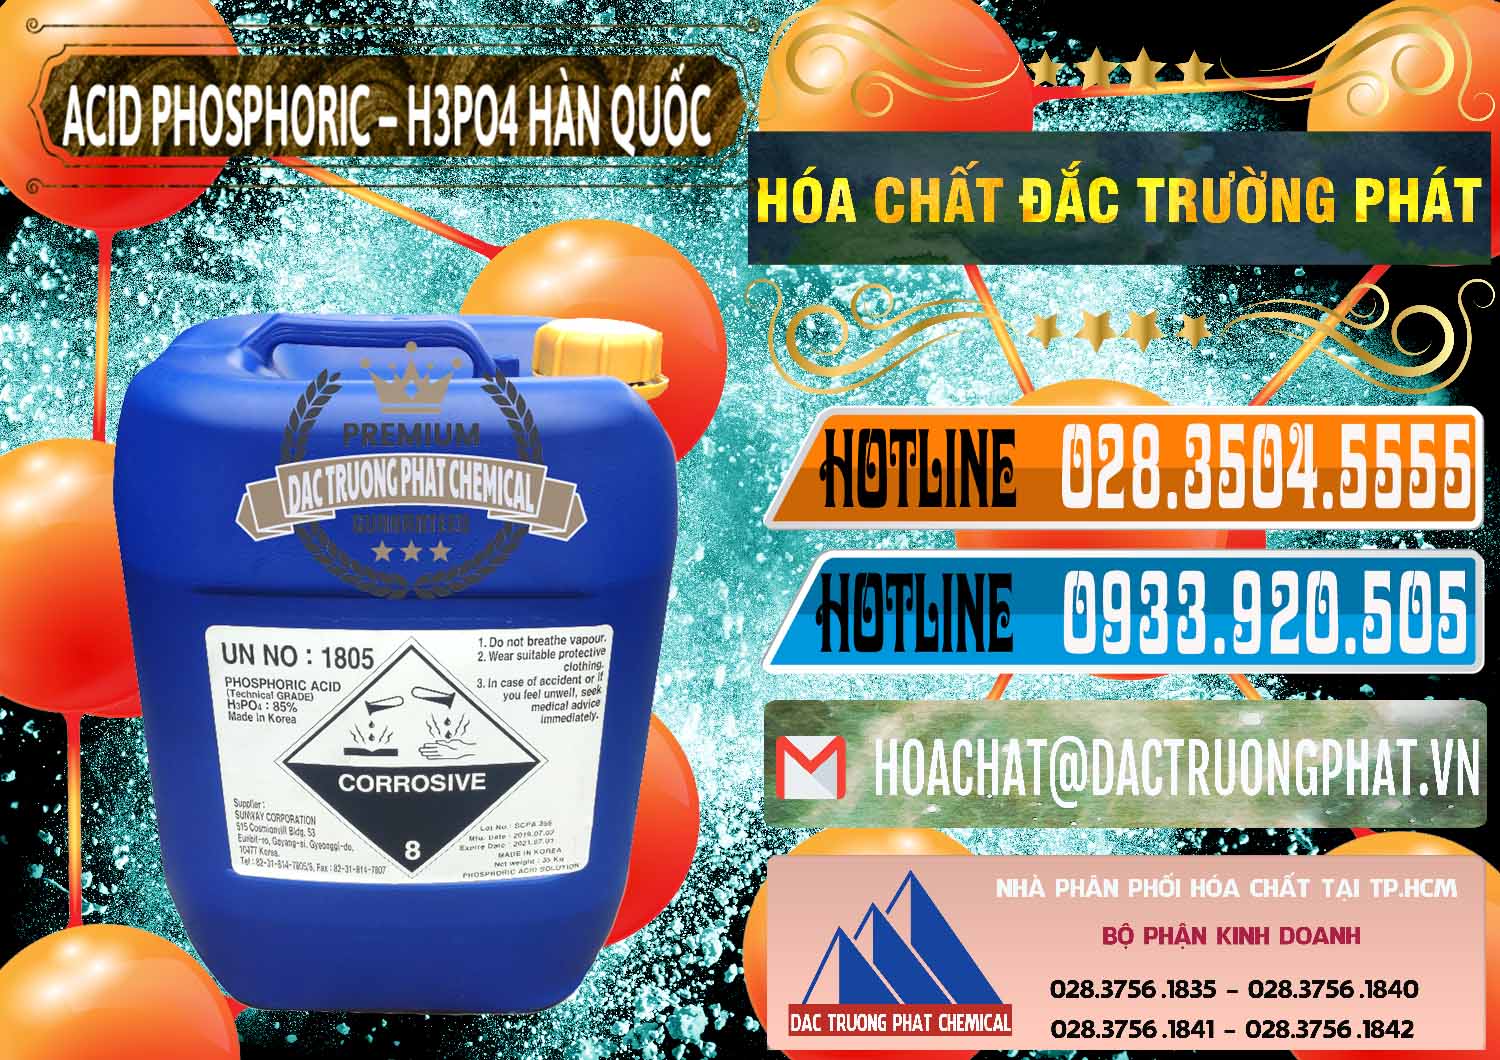 Cty chuyên nhập khẩu ( bán ) Acid Phosphoric – H3PO4 85% Can Xanh Hàn Quốc Korea - 0016 - Đơn vị kinh doanh - phân phối hóa chất tại TP.HCM - stmp.net